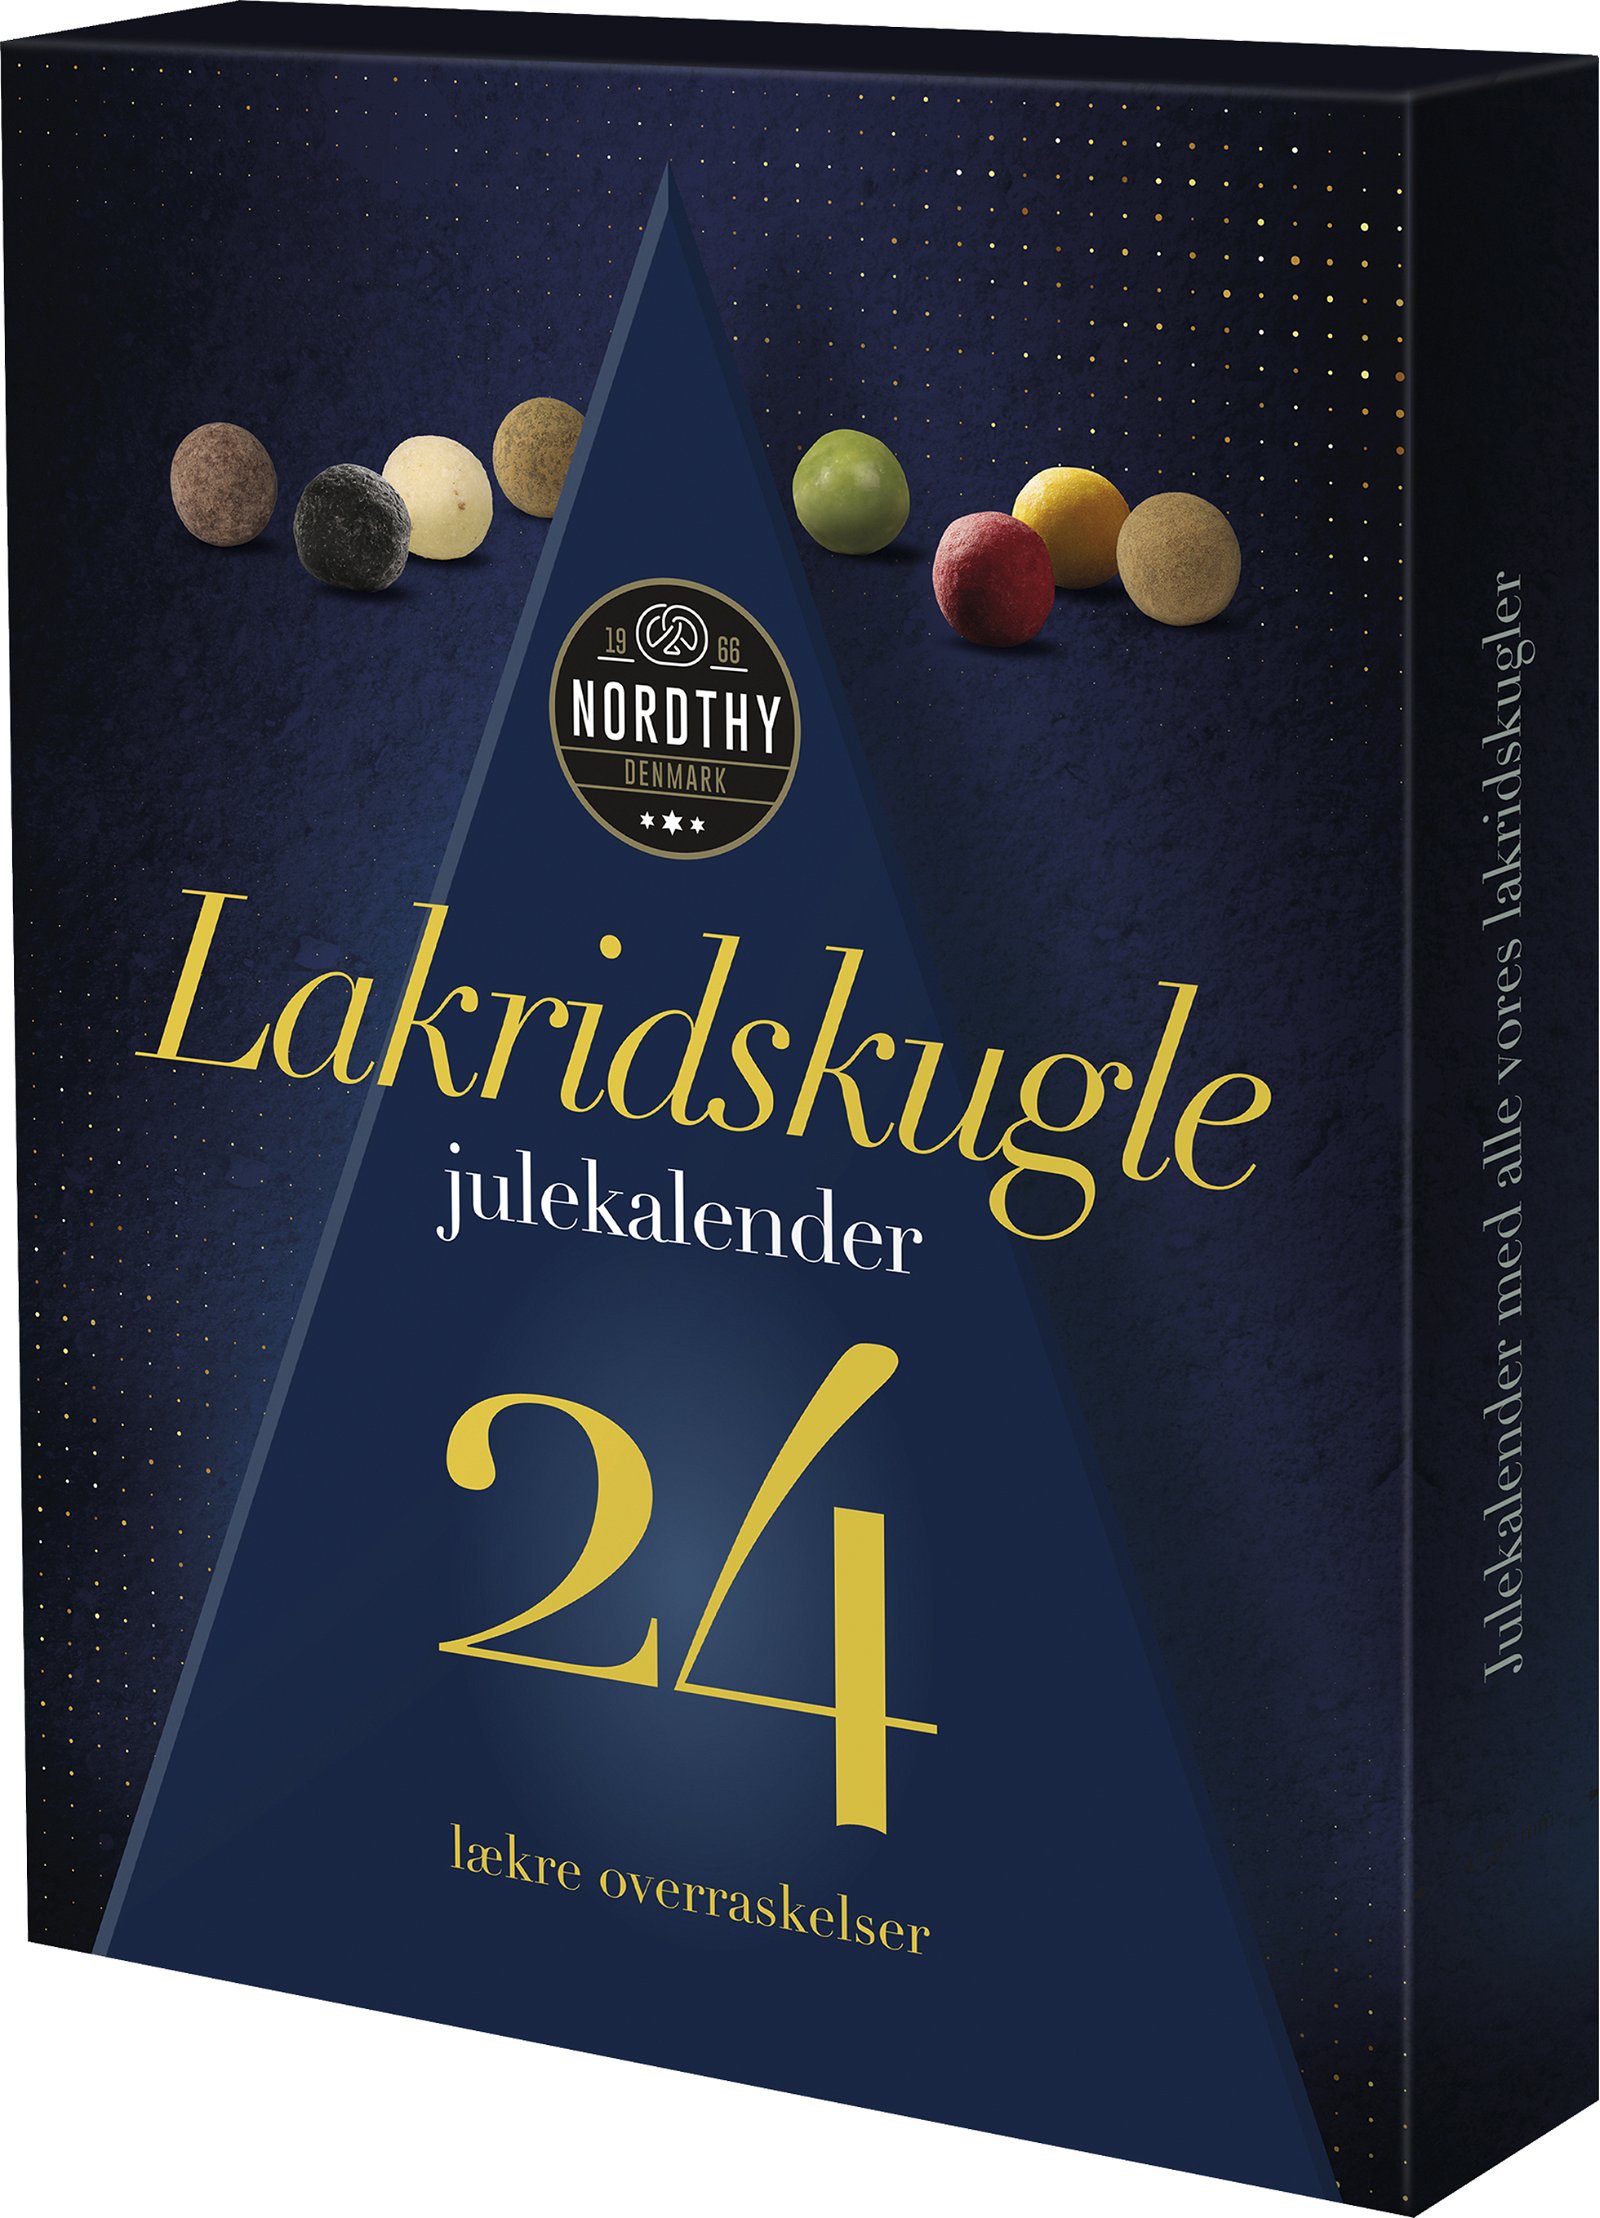 Nordthy liquorice-ball Christmas calendar